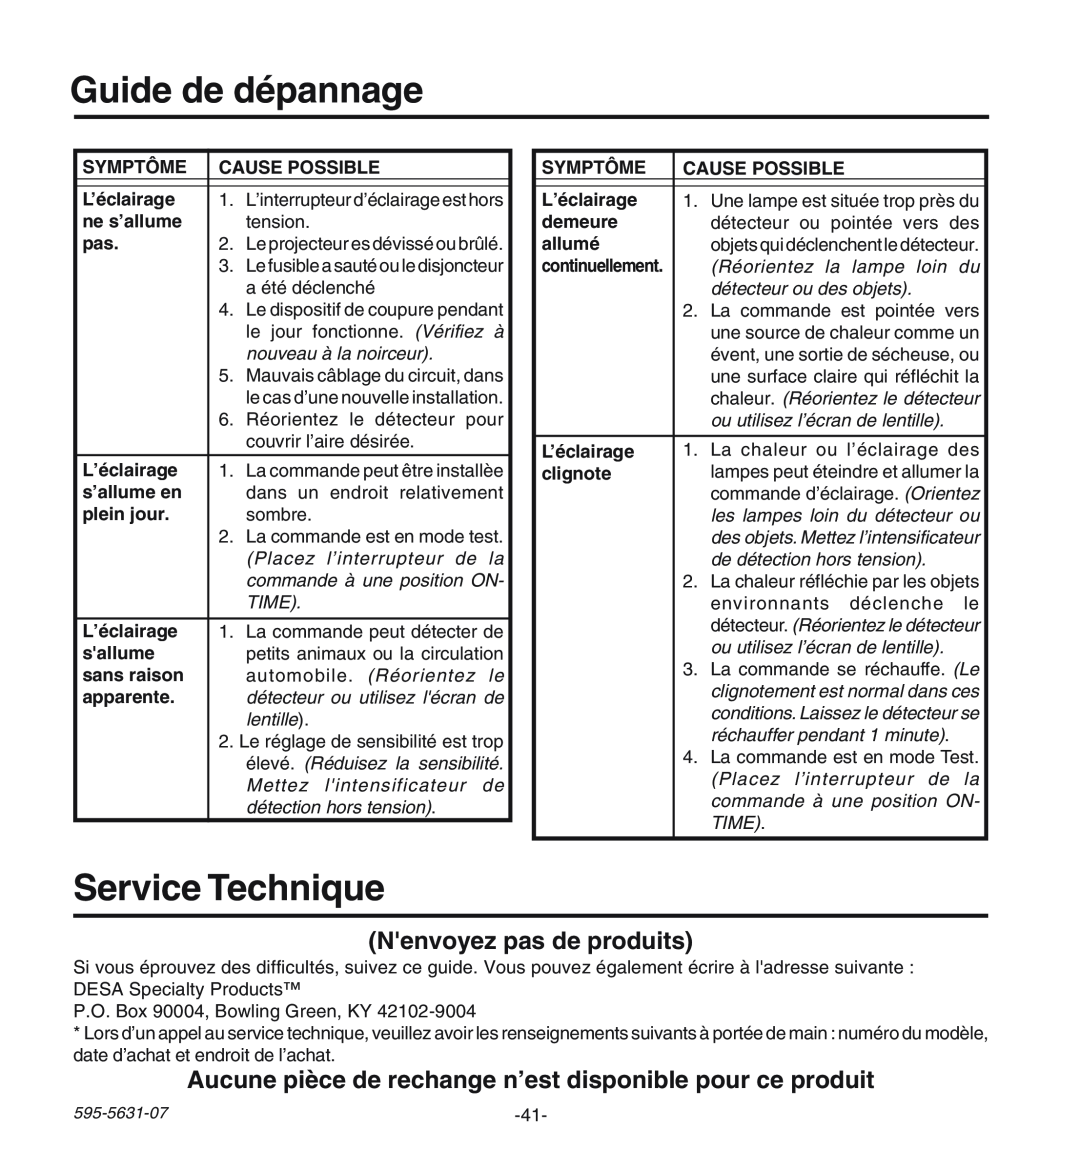 Desa HD-9240 manual Guide de dépannage, Service Technique, Nenvoyez pas de produits 